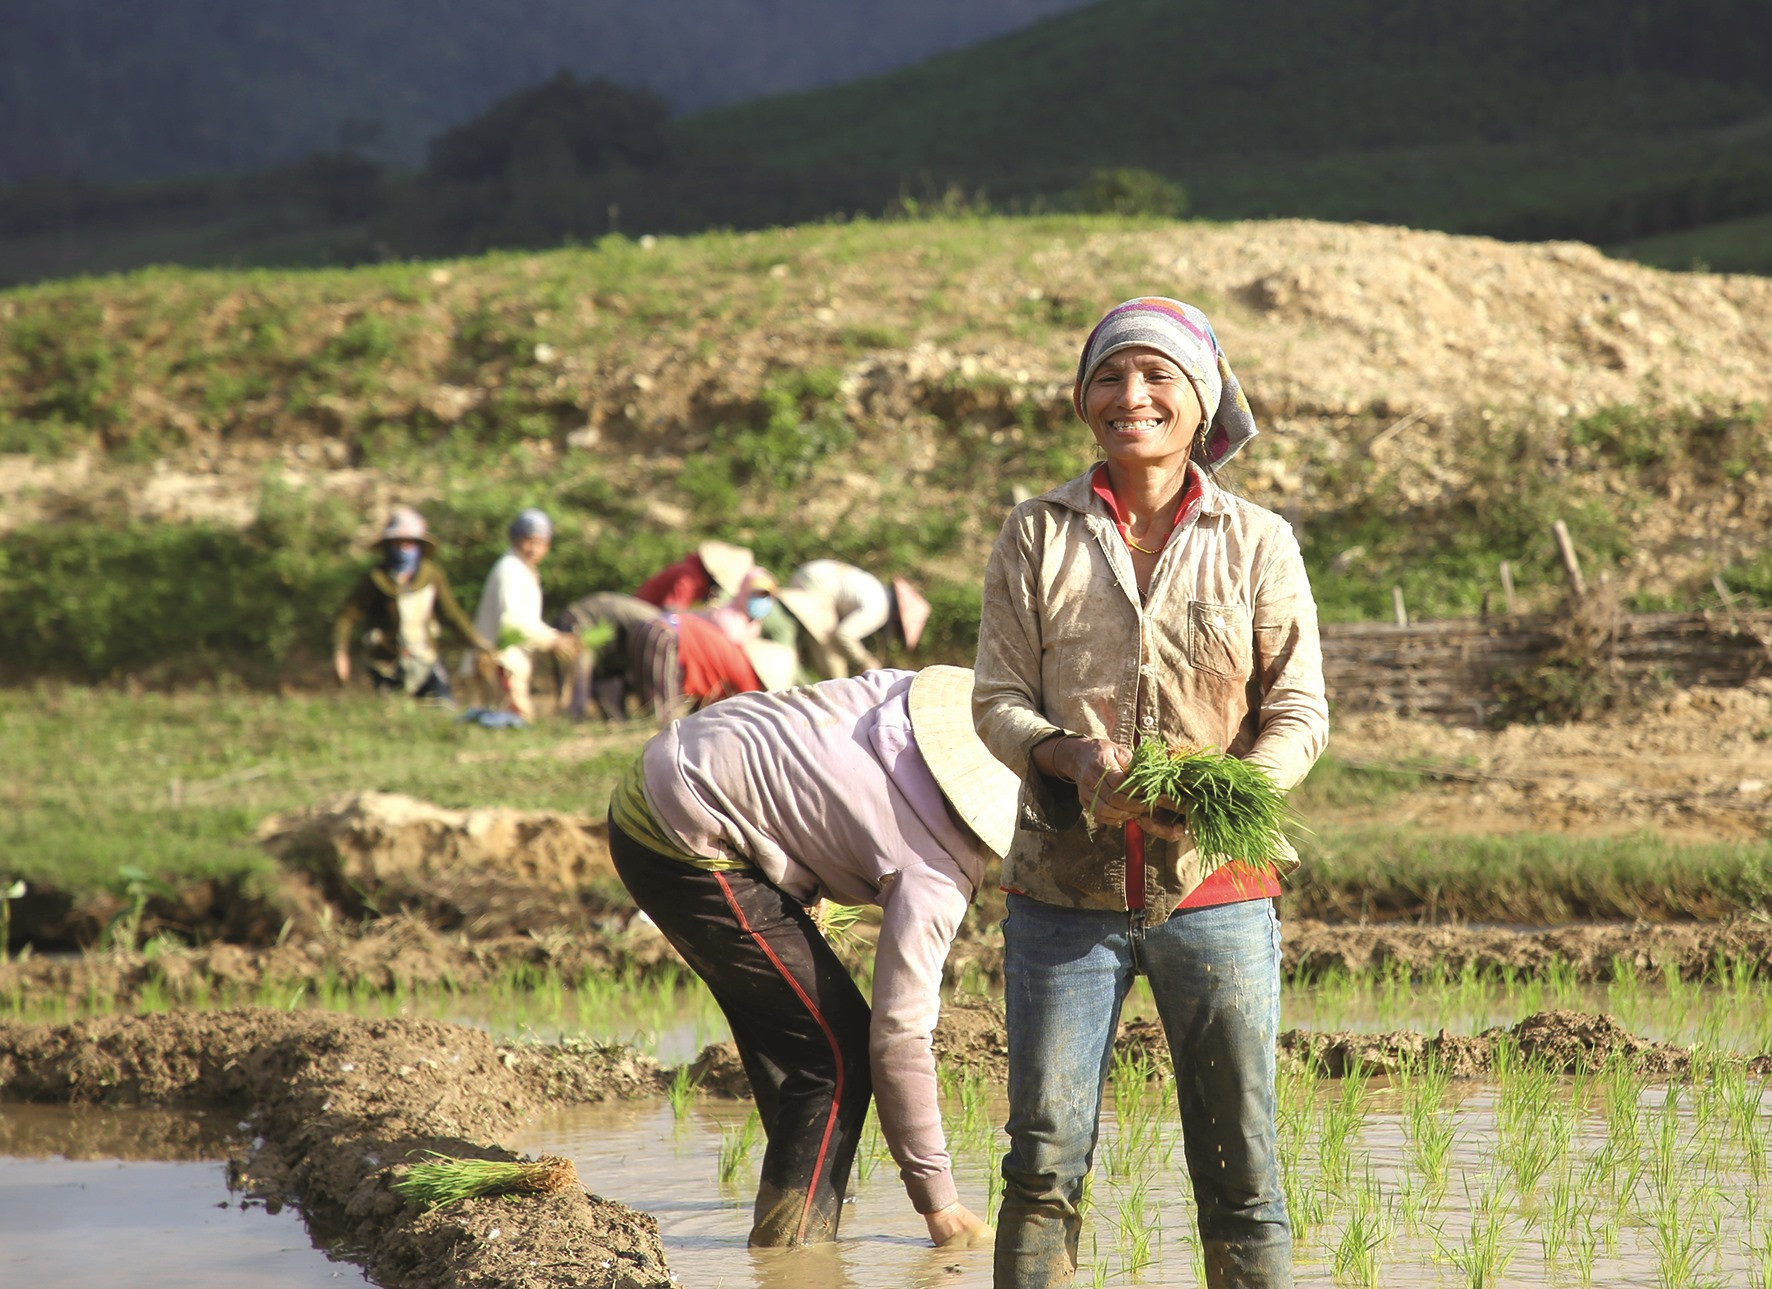 Nụ cười vui trên cánh đồng lúa nước của người phụ nữ Bh’noong huyện Phước Sơn.